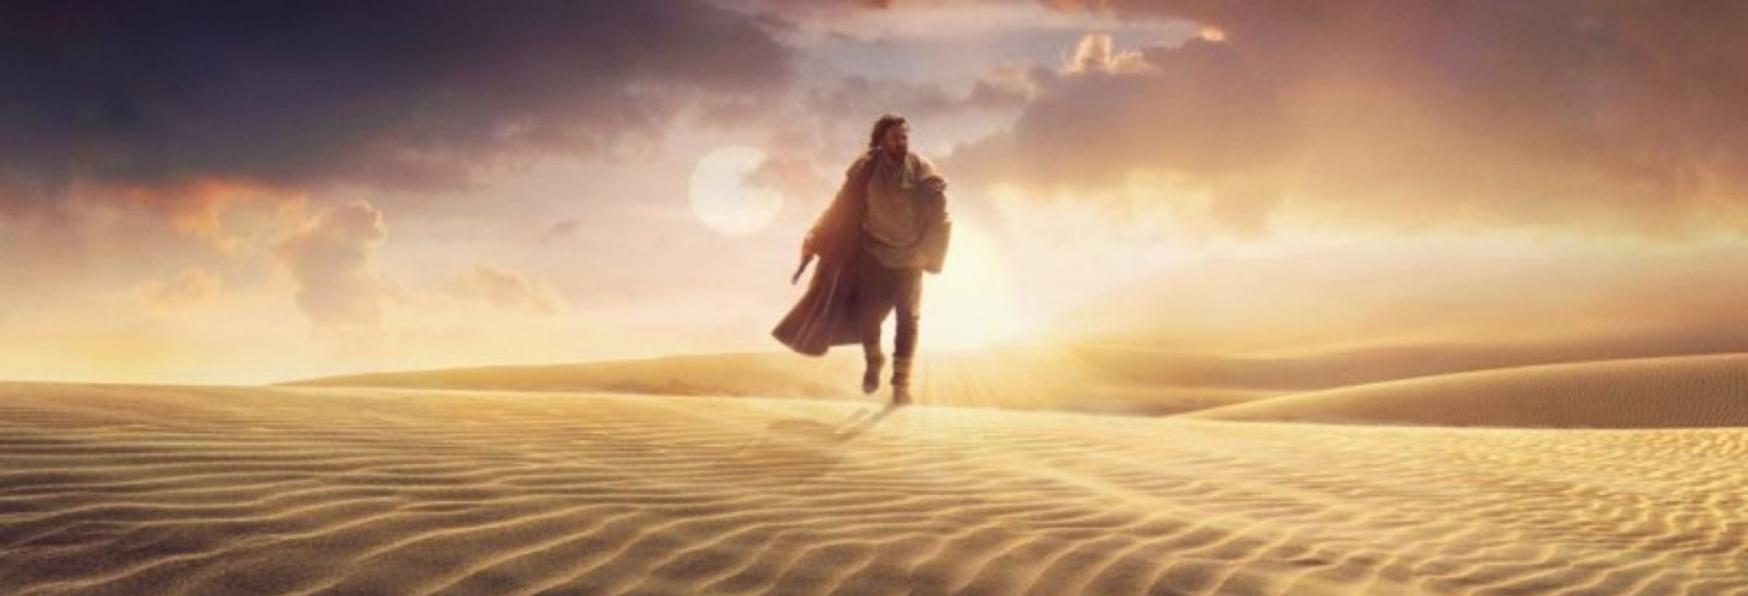 Obi-Wan Kenobi: Rilasciato il Teaser Trailer della Serie TV con Ewan McGregor